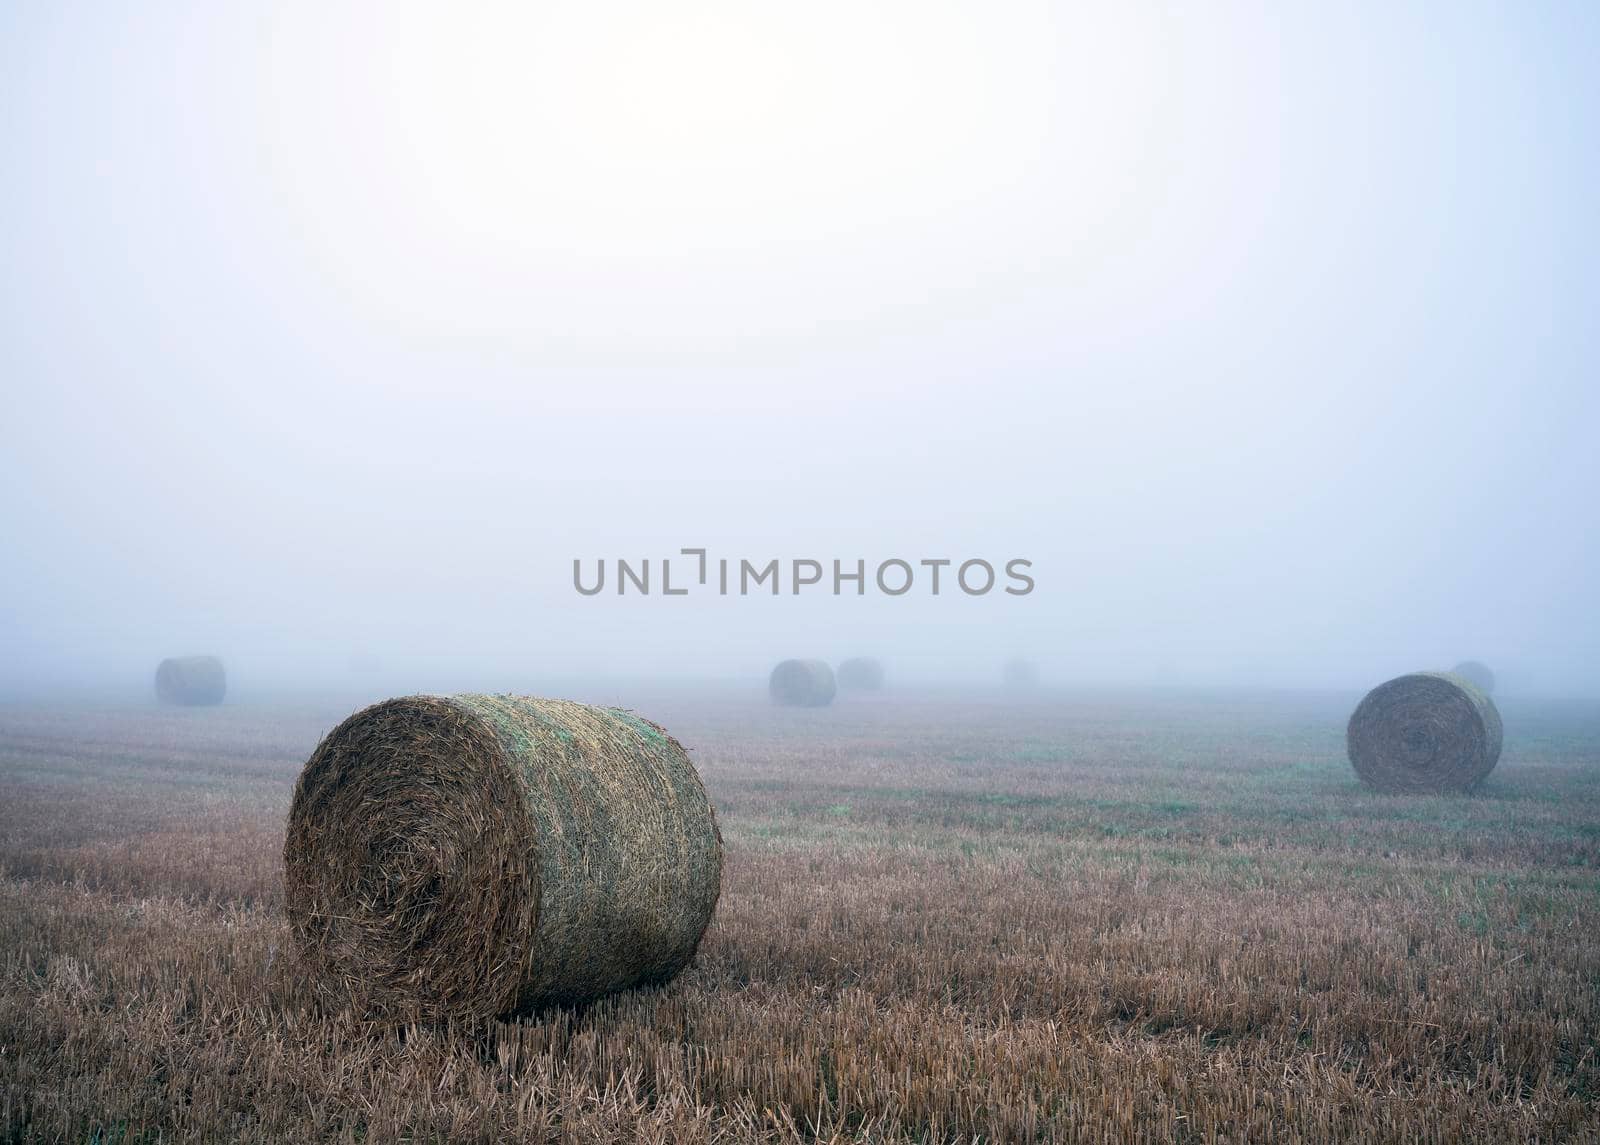 straw bales in misty morning field near rouen in france by ahavelaar